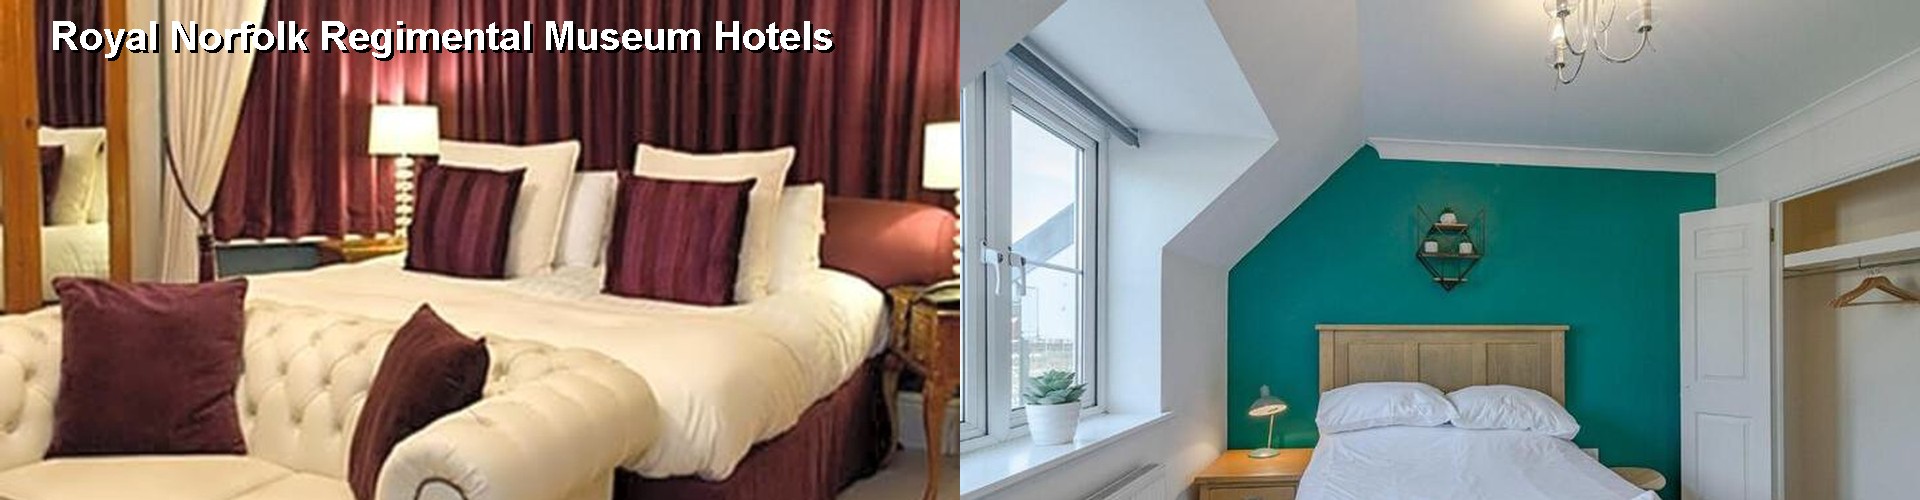 5 Best Hotels near Royal Norfolk Regimental Museum